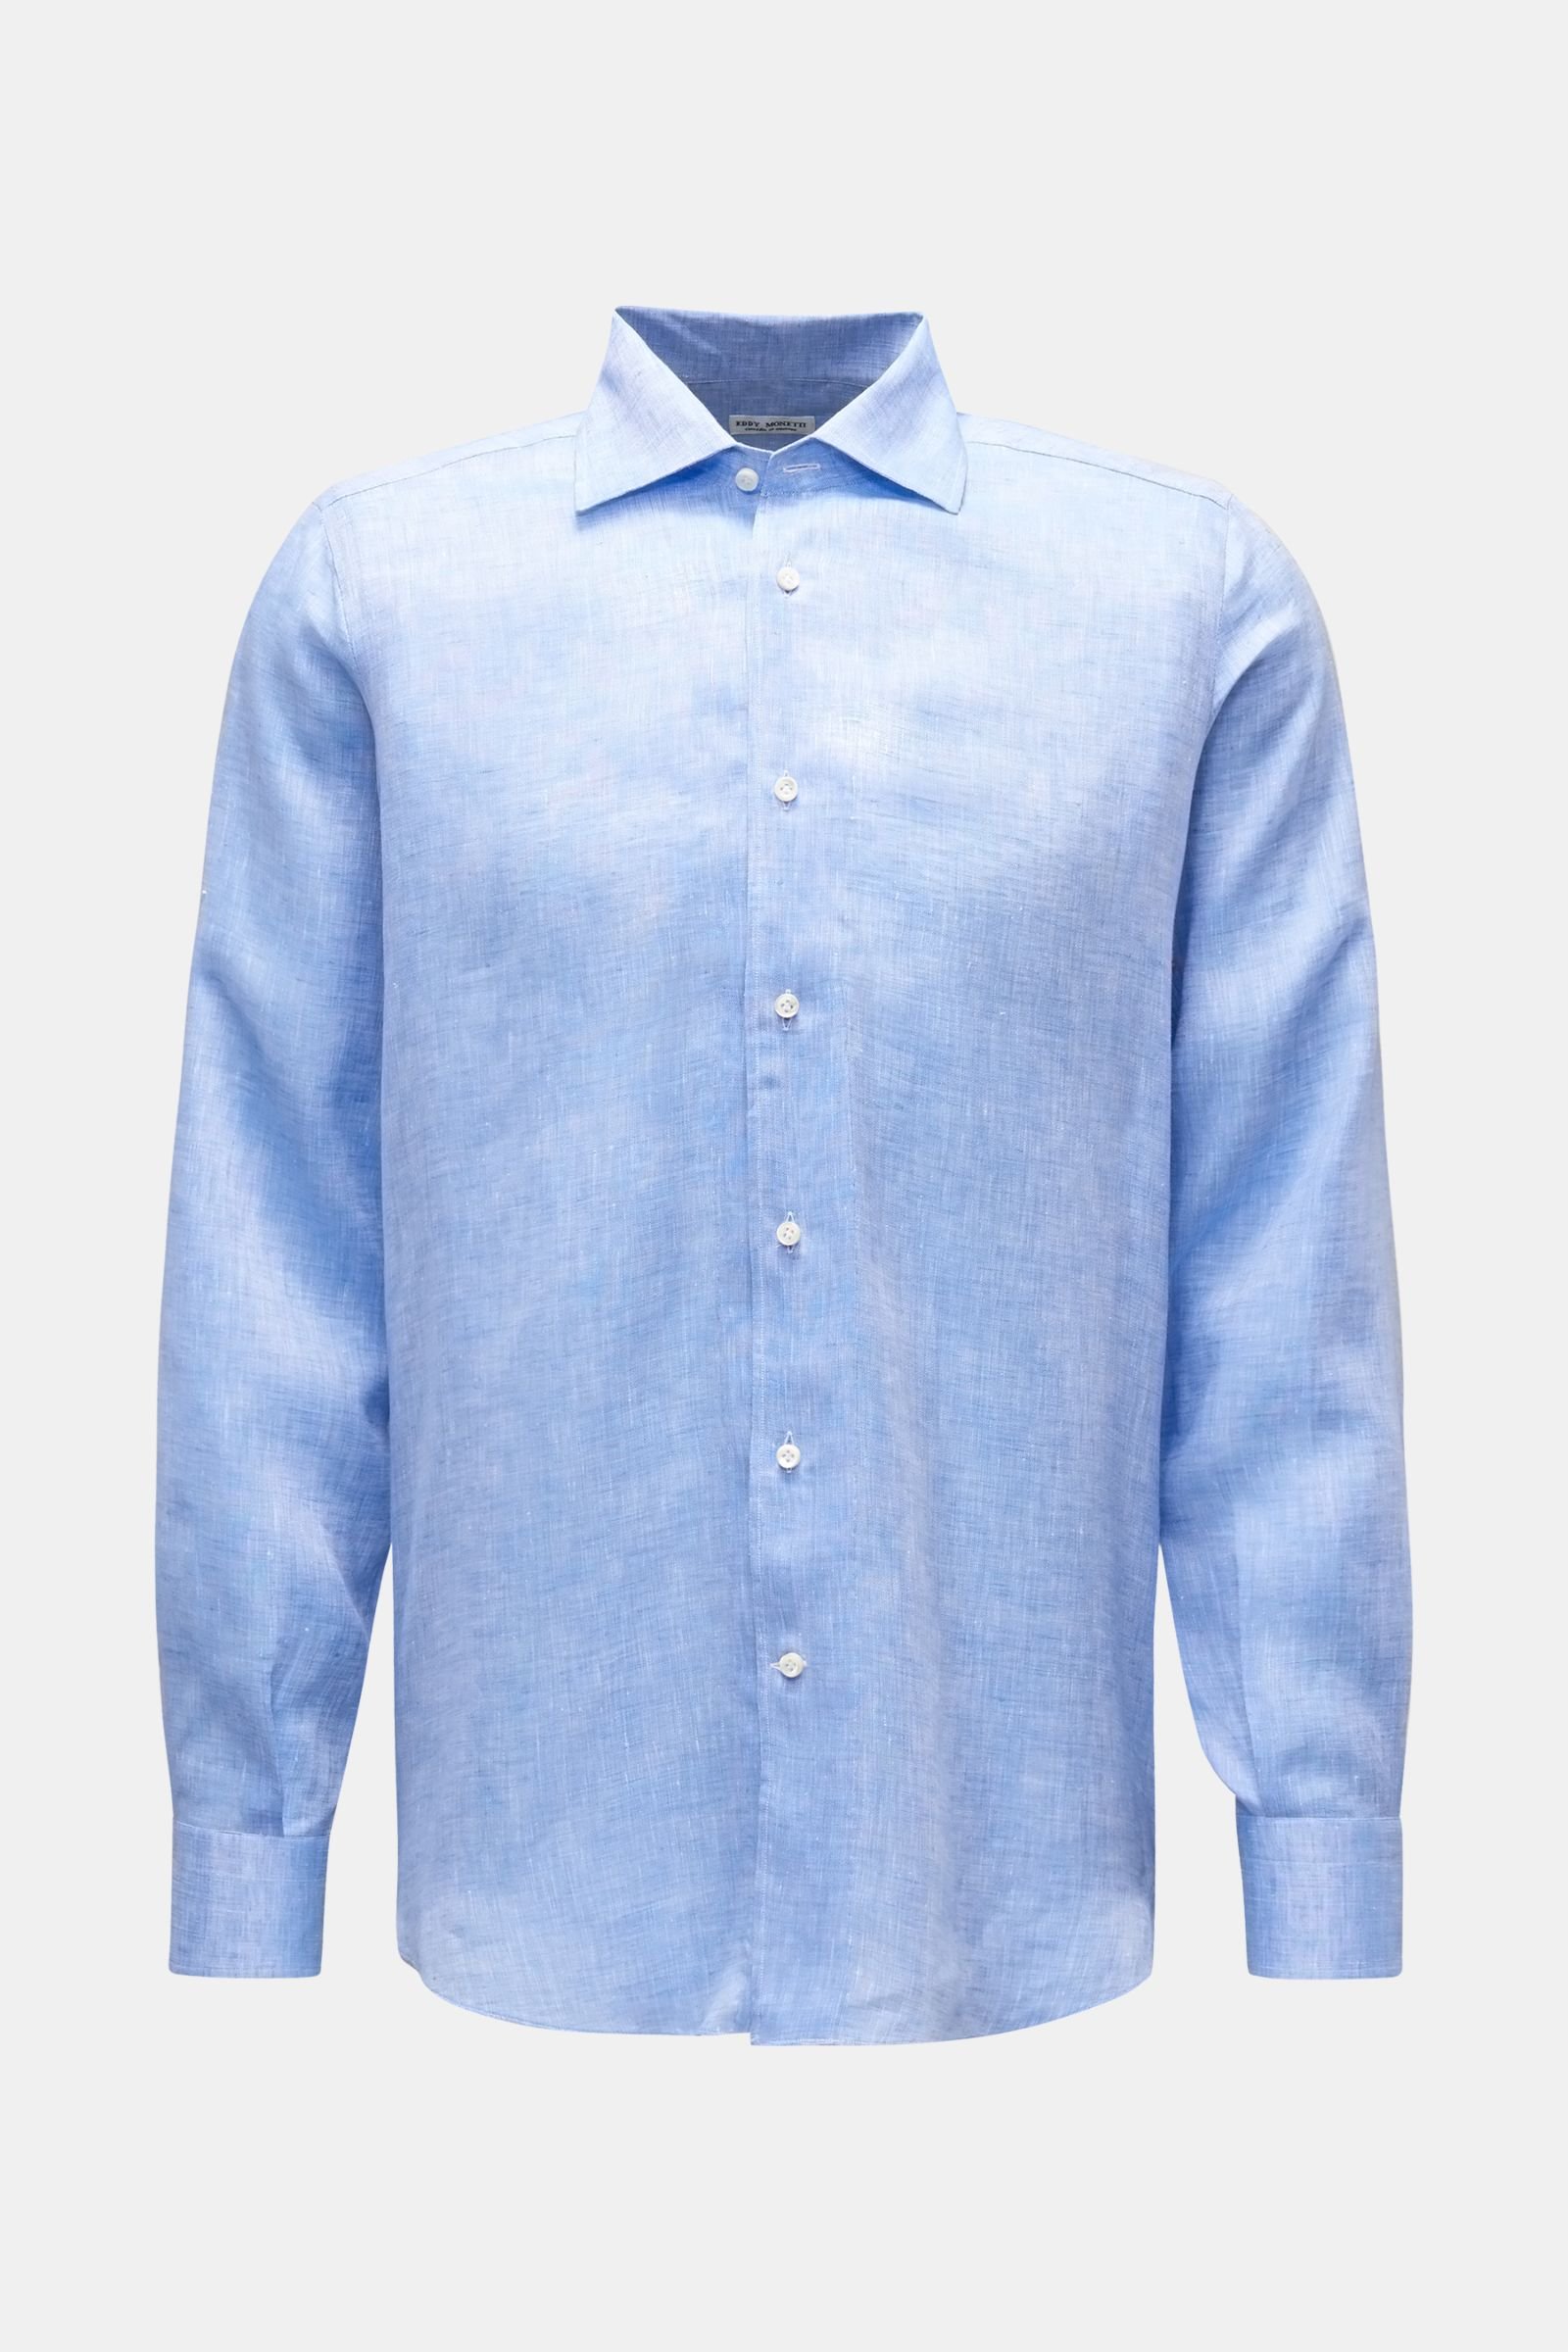 Linen shirt shark collar blue